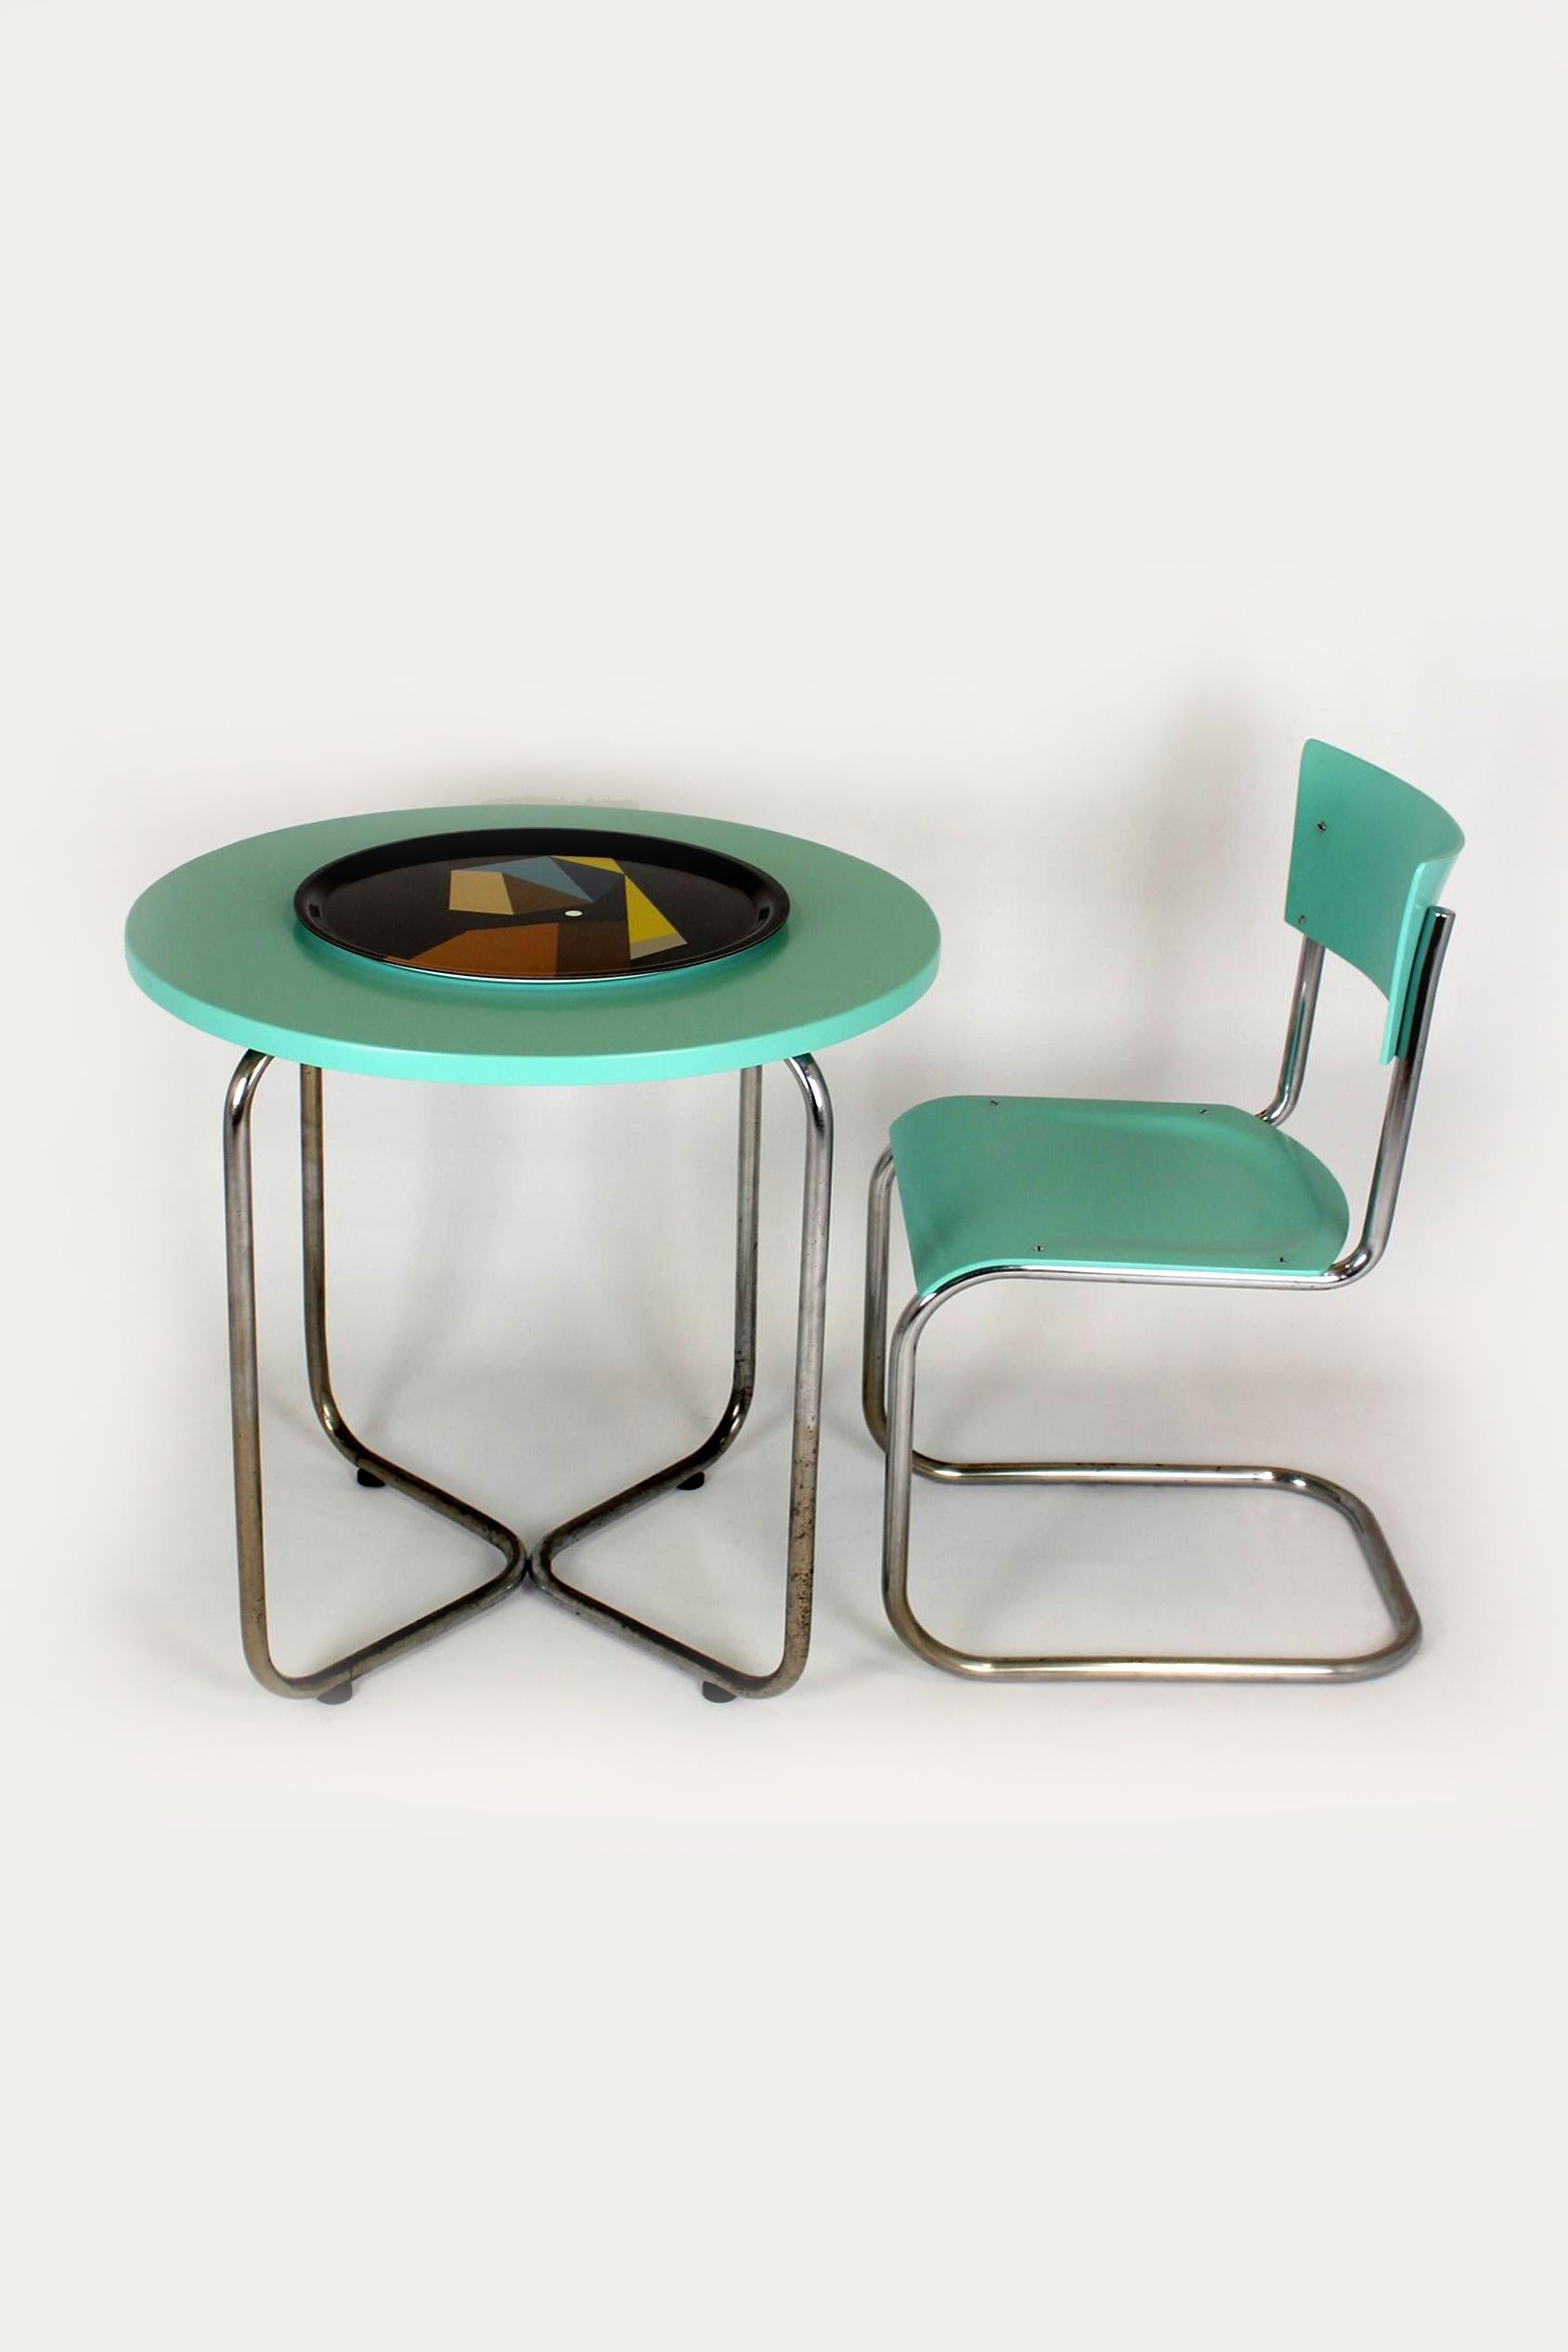 Cet ensemble de style Bauhaus a été produit dans les années 1930 en Tchécoslovaquie. L'ensemble comprend une table ronde et une chaise (S43) conçues par Mart Stam. Le mobilier est fait d'acier tubulaire chromé et de bois et a été fabriqué